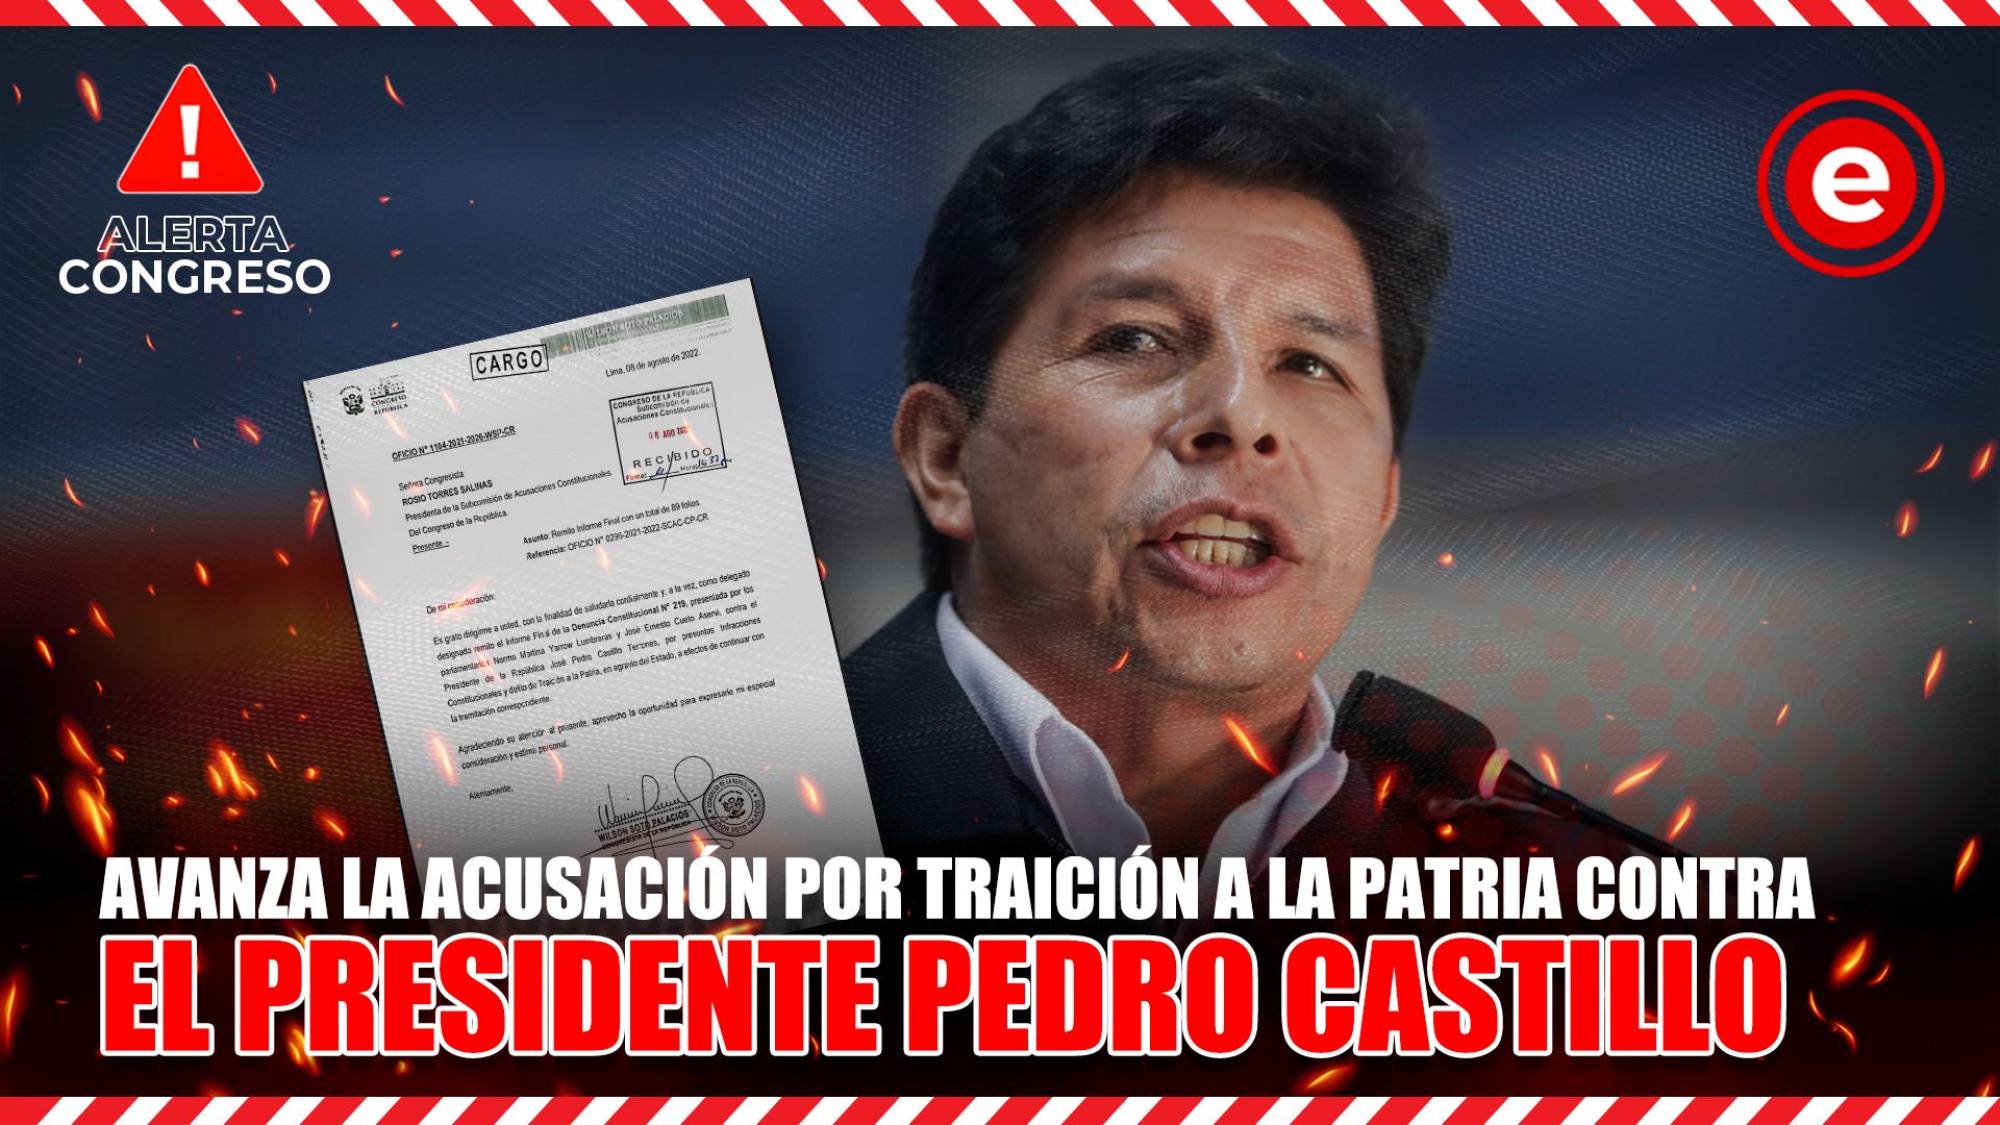 Alerta Congreso | Avanza la acusación por traición a la patria contra el presidente Castillo, Epicentro TV